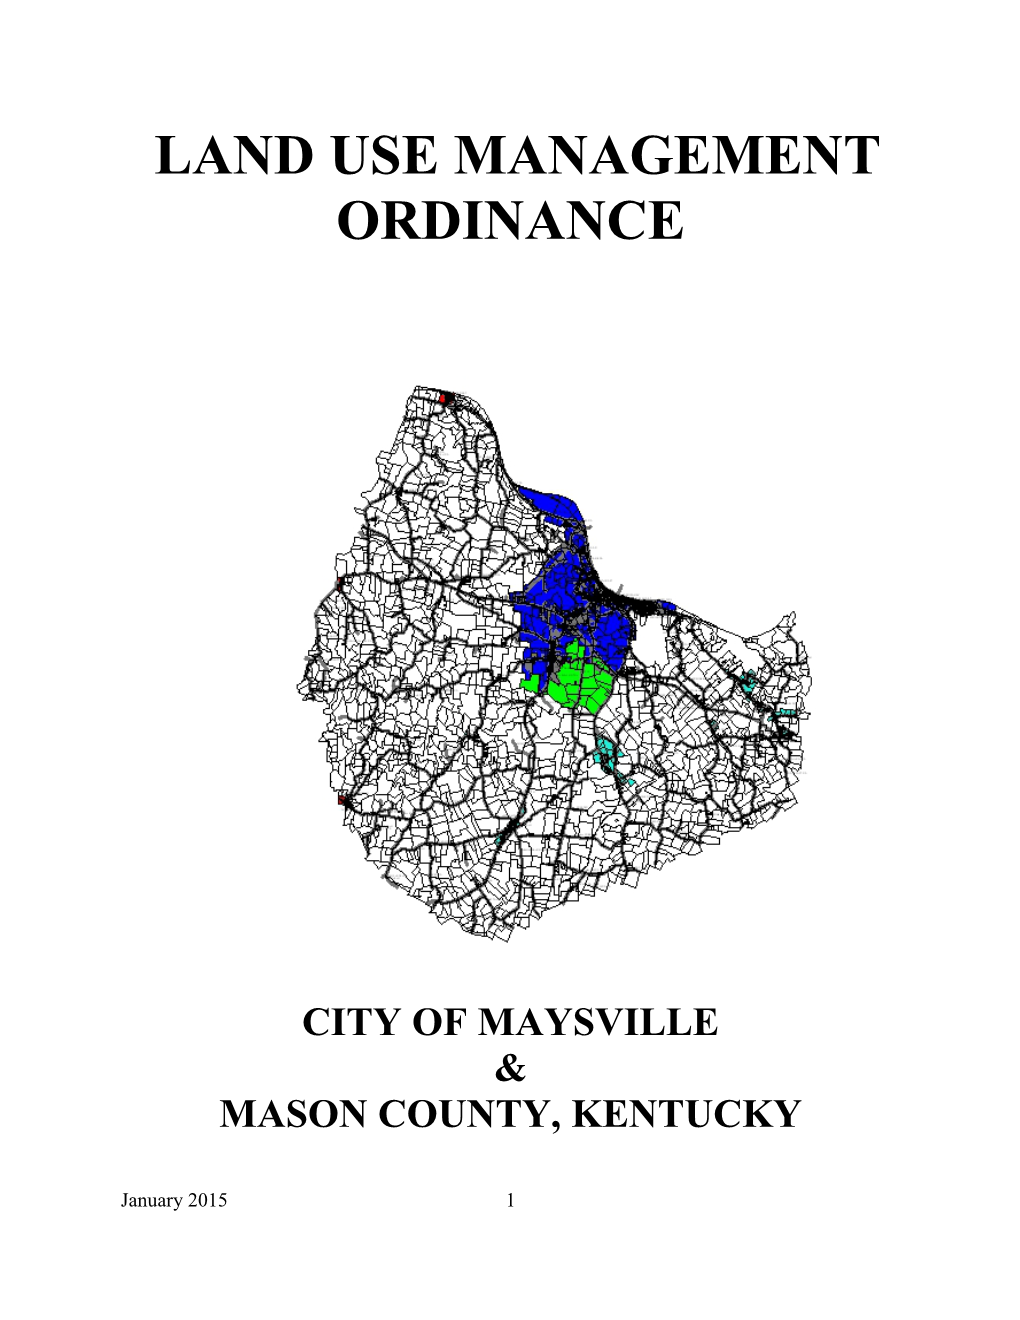 Land Use Management Ordinance